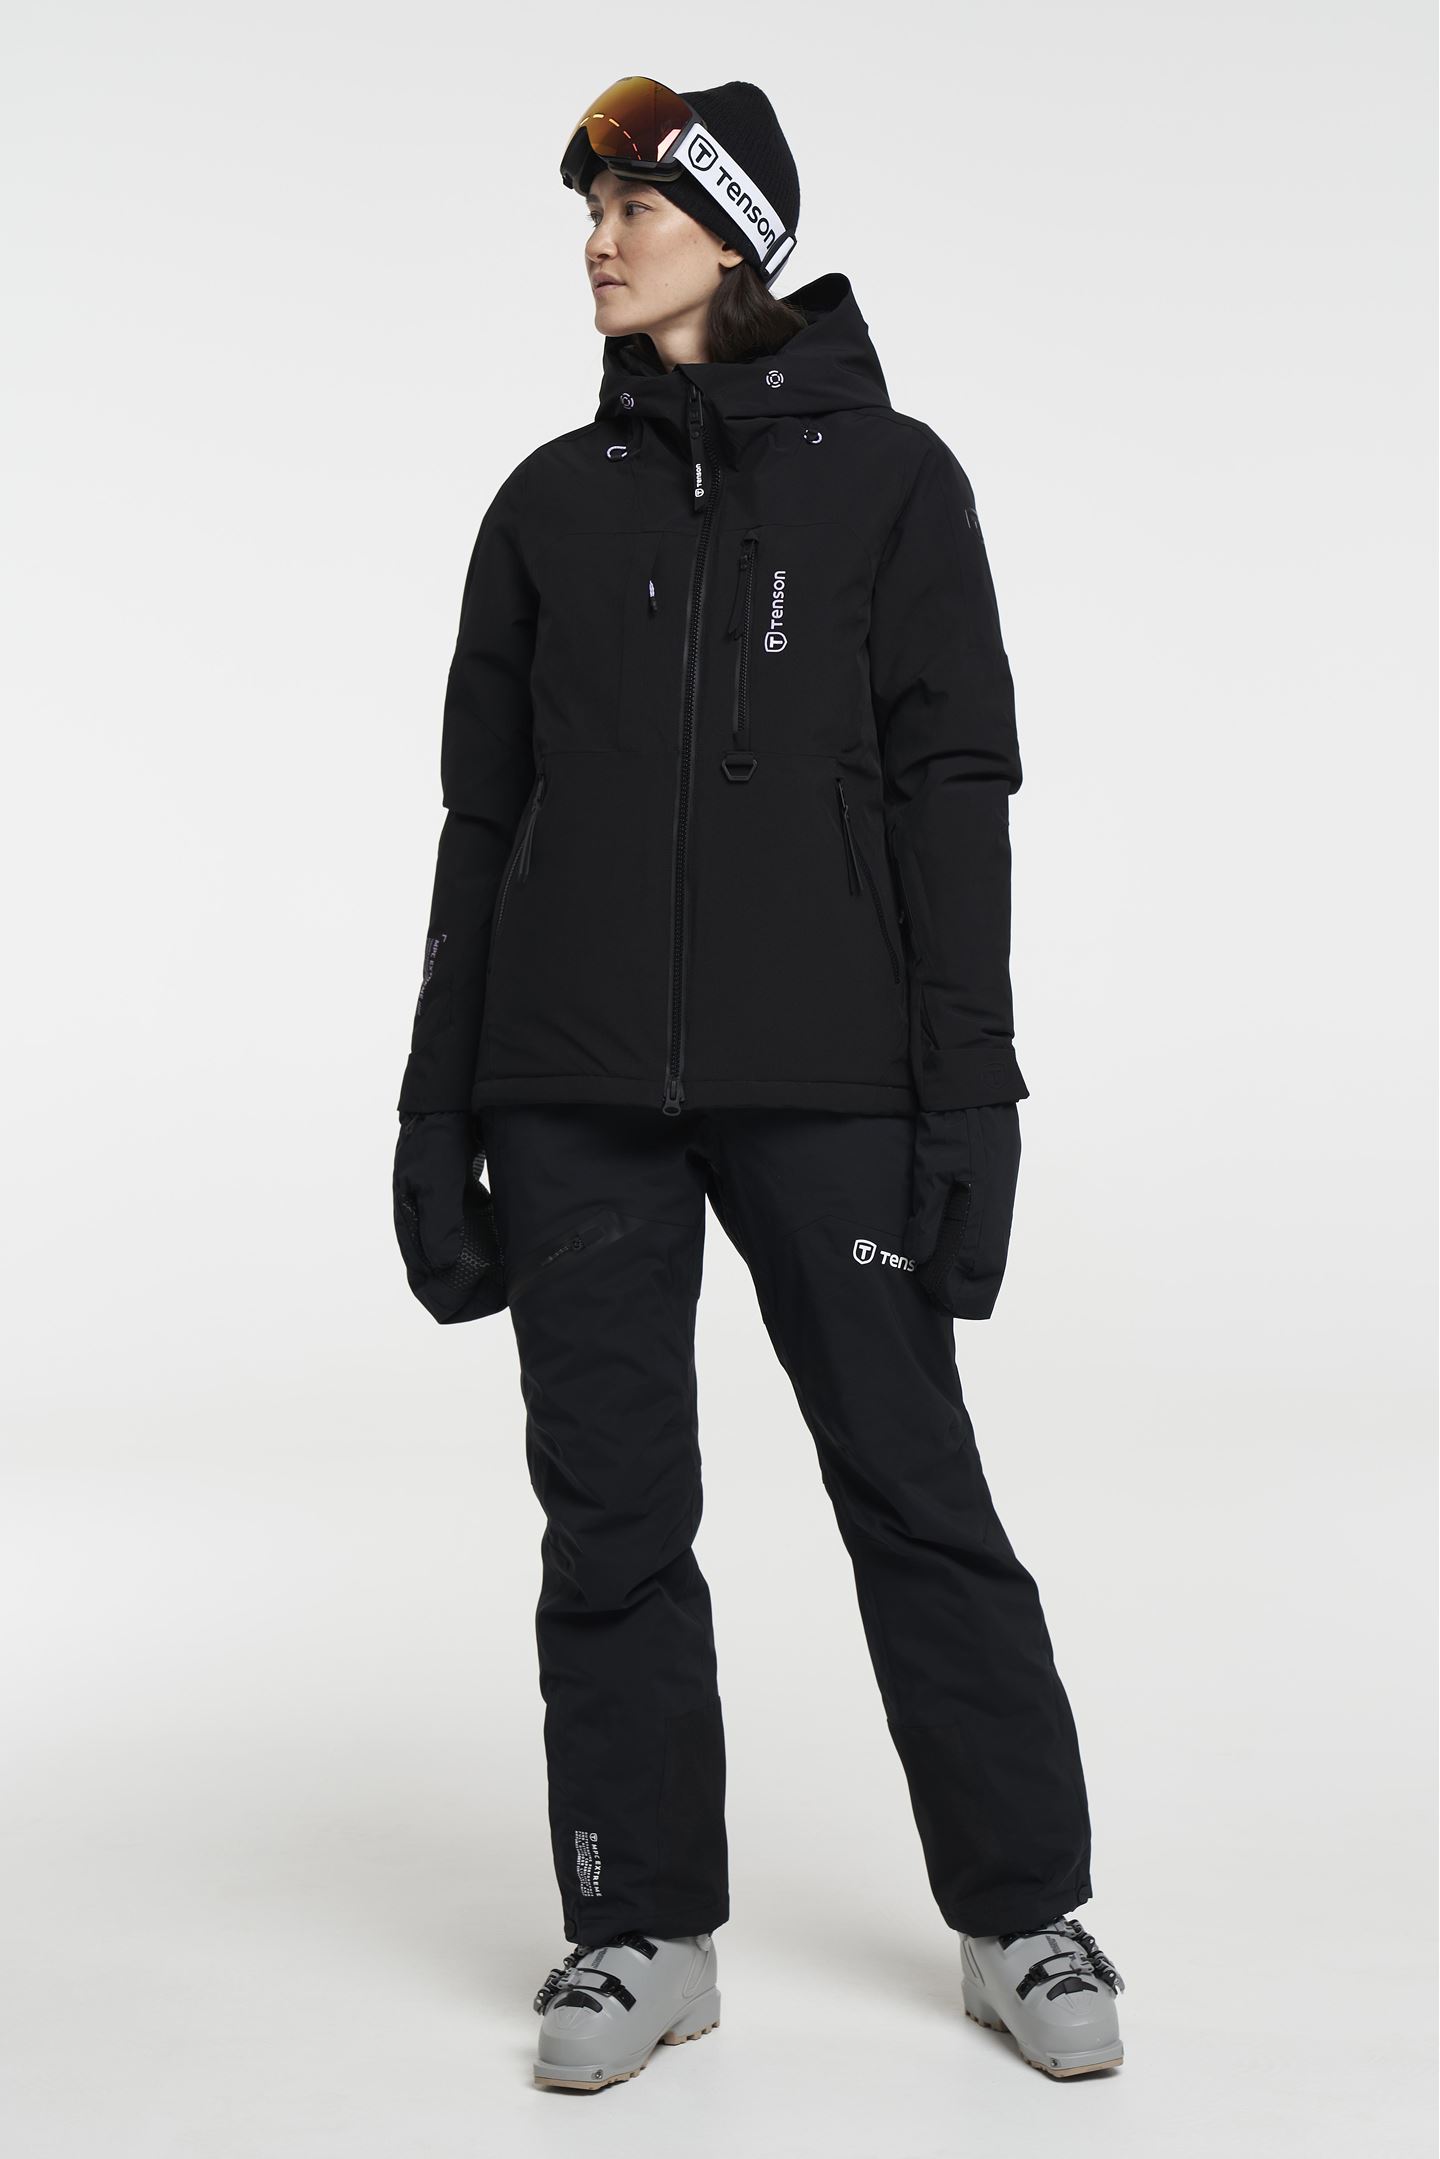 Heel veel goeds mouw Verbazing Orbit Ski Jacket - Women's Lined Ski Jacket - Black